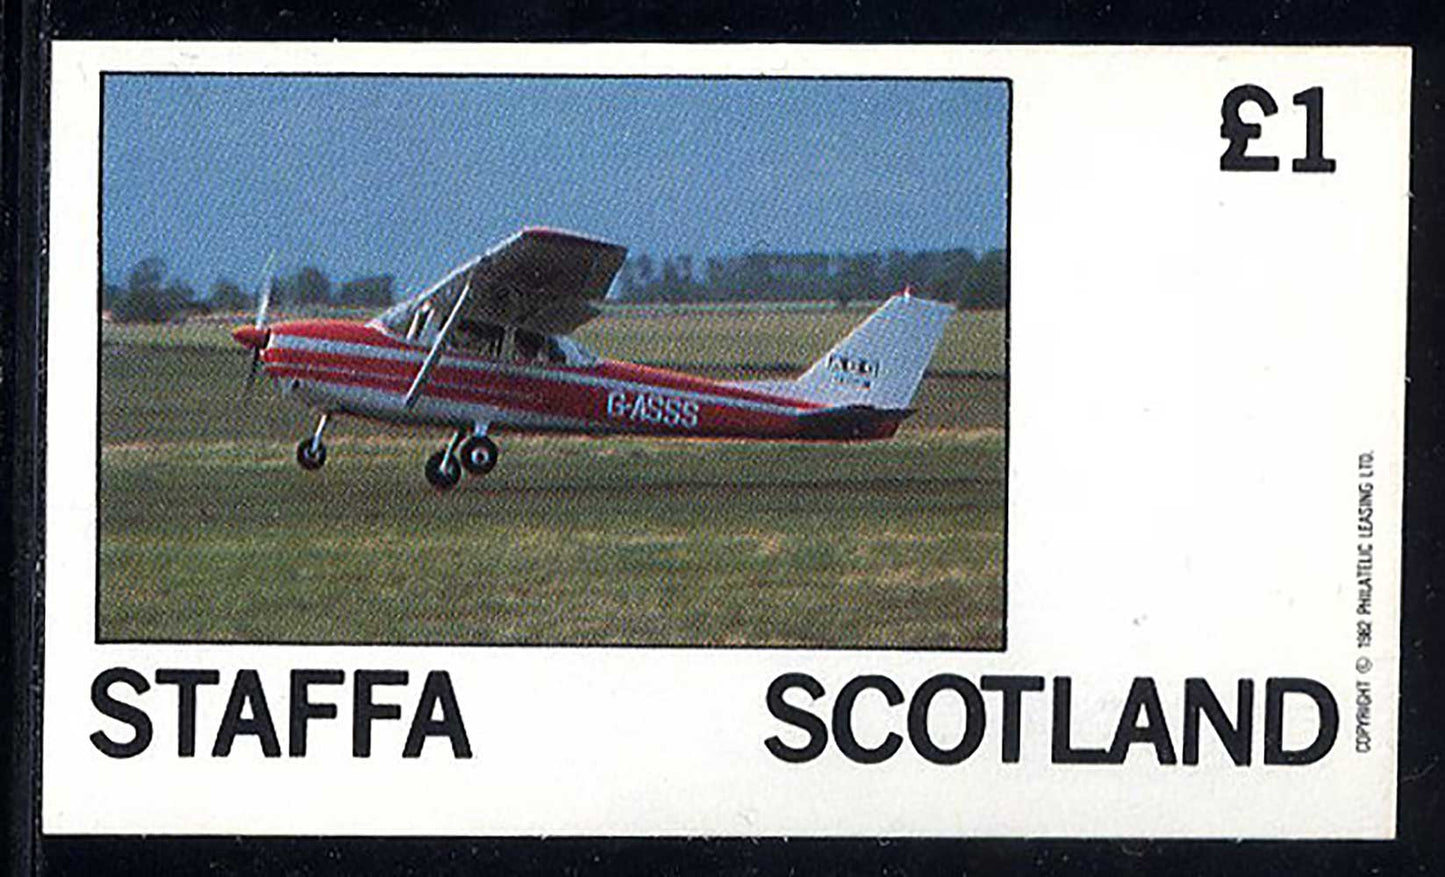 Staffa Single Winged Aircraft £1